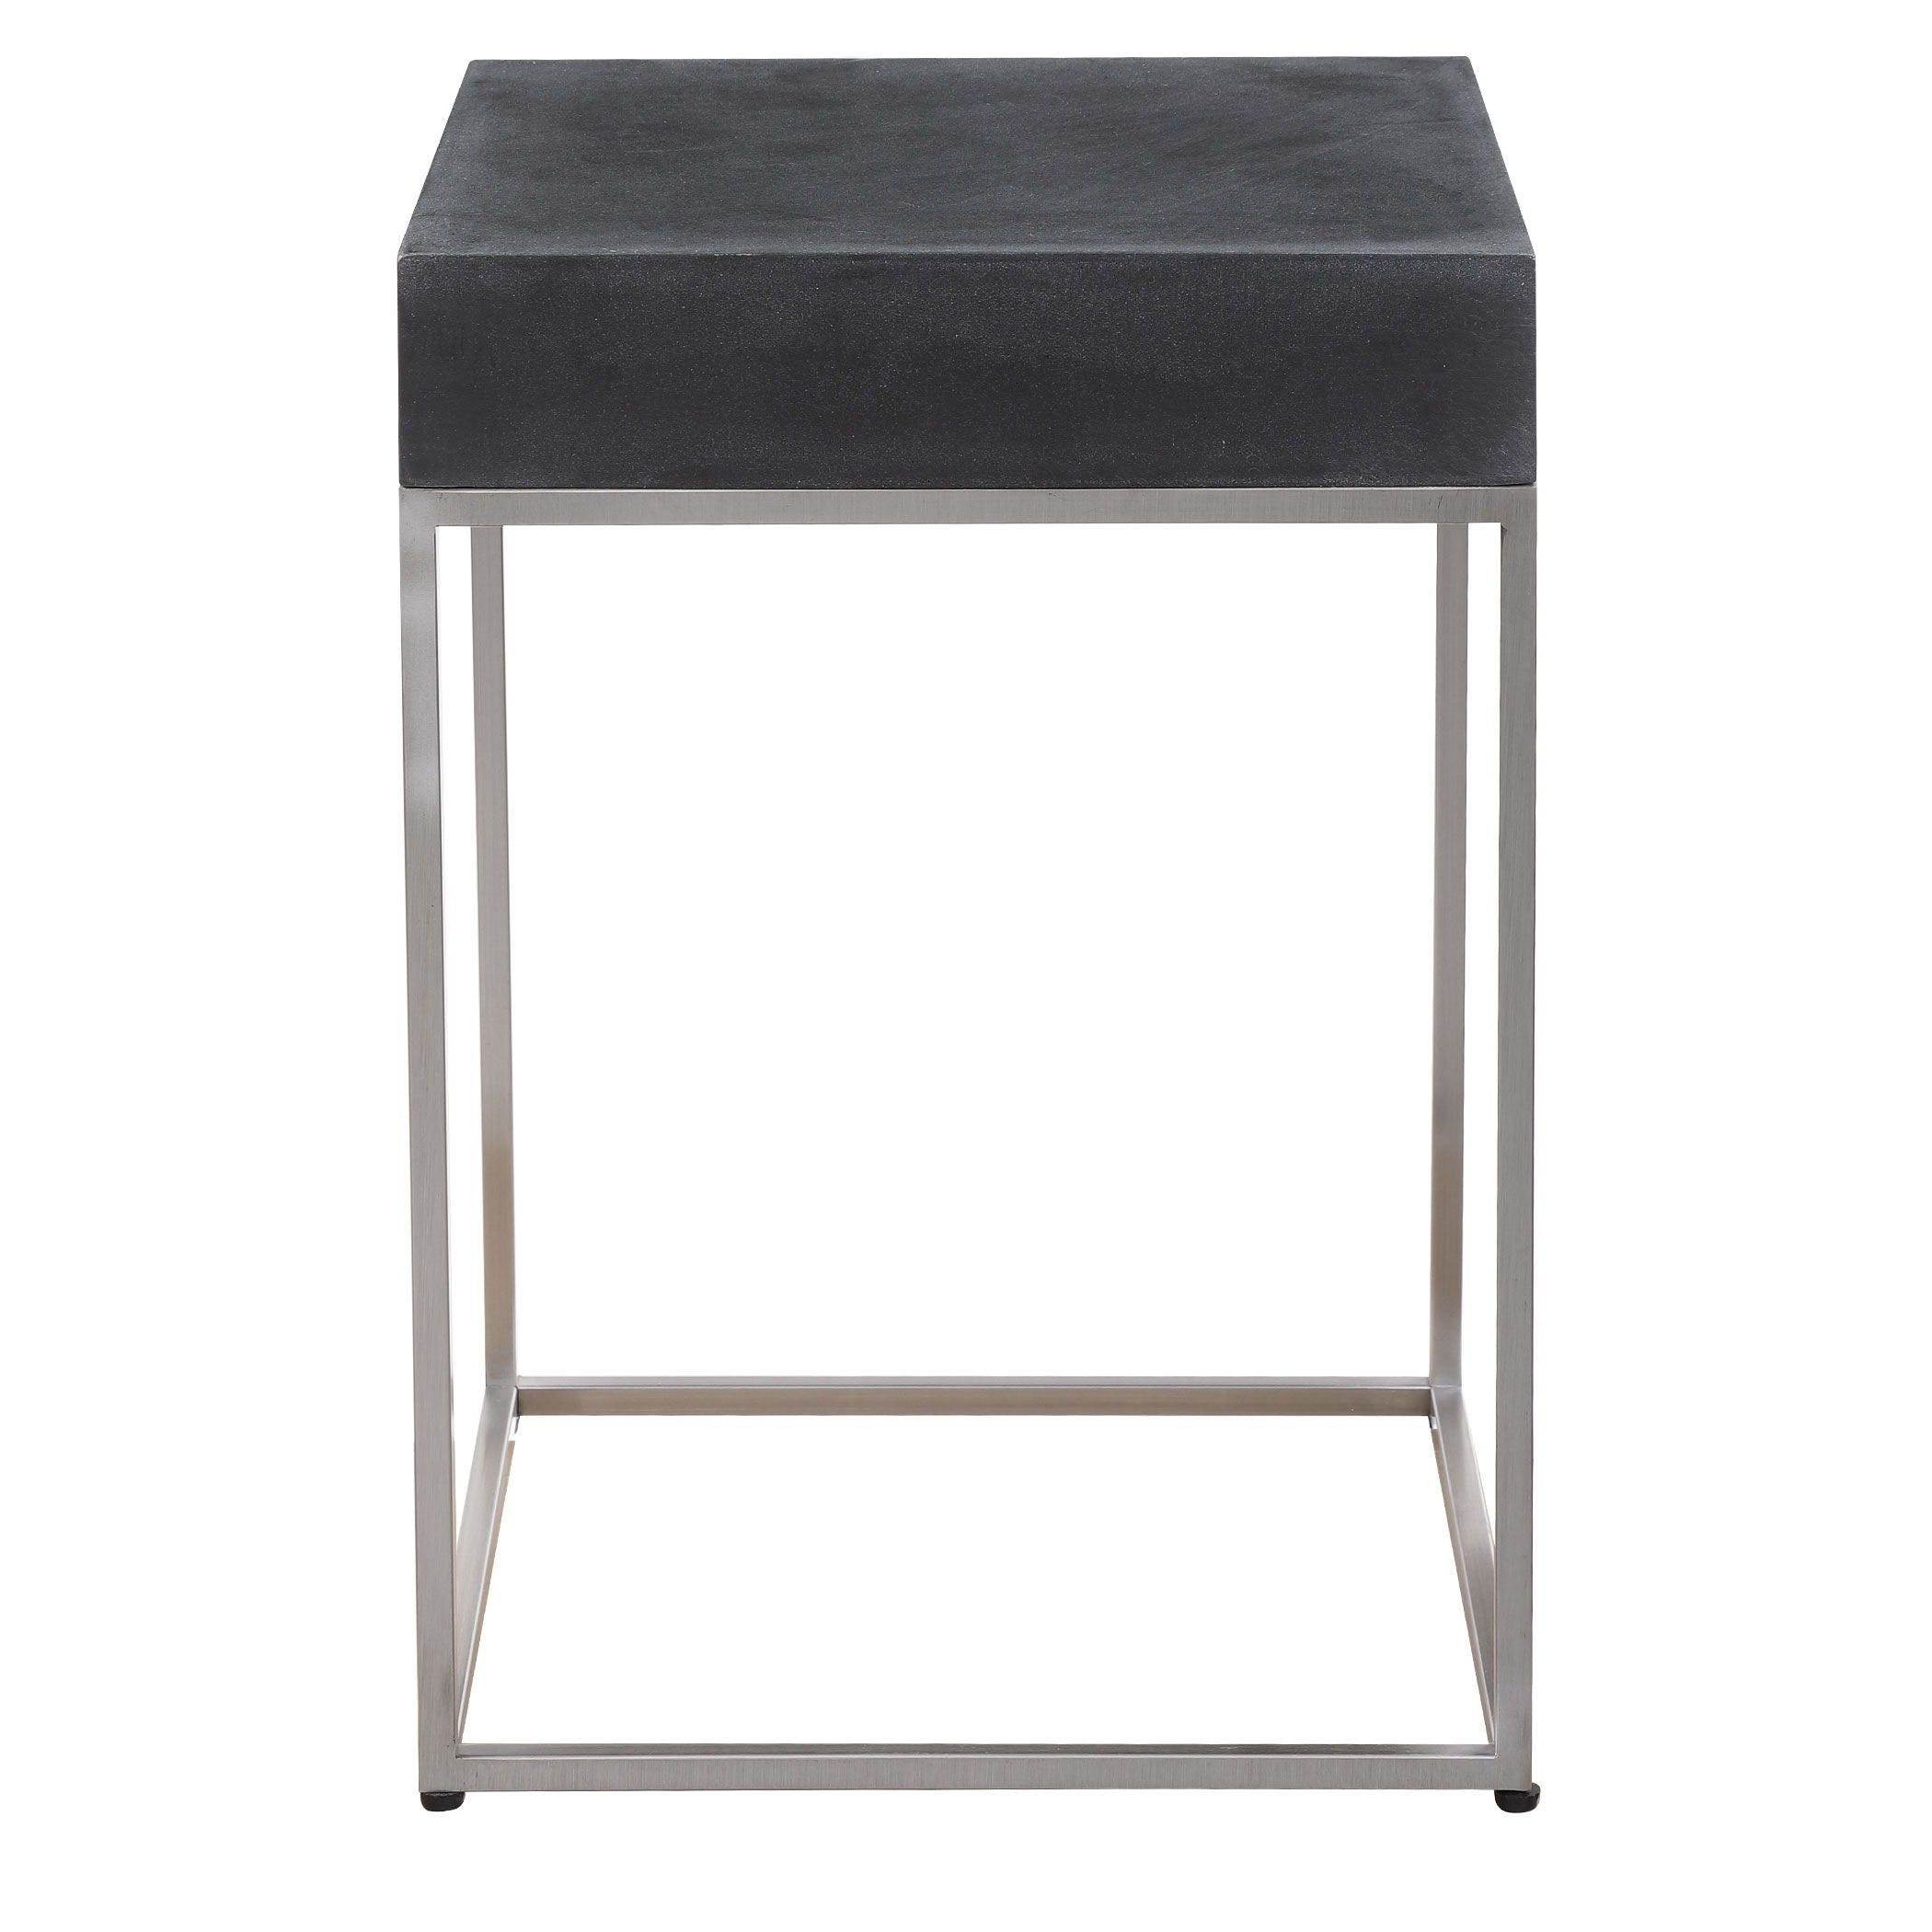 Jase - Concrete Accent Table - Black